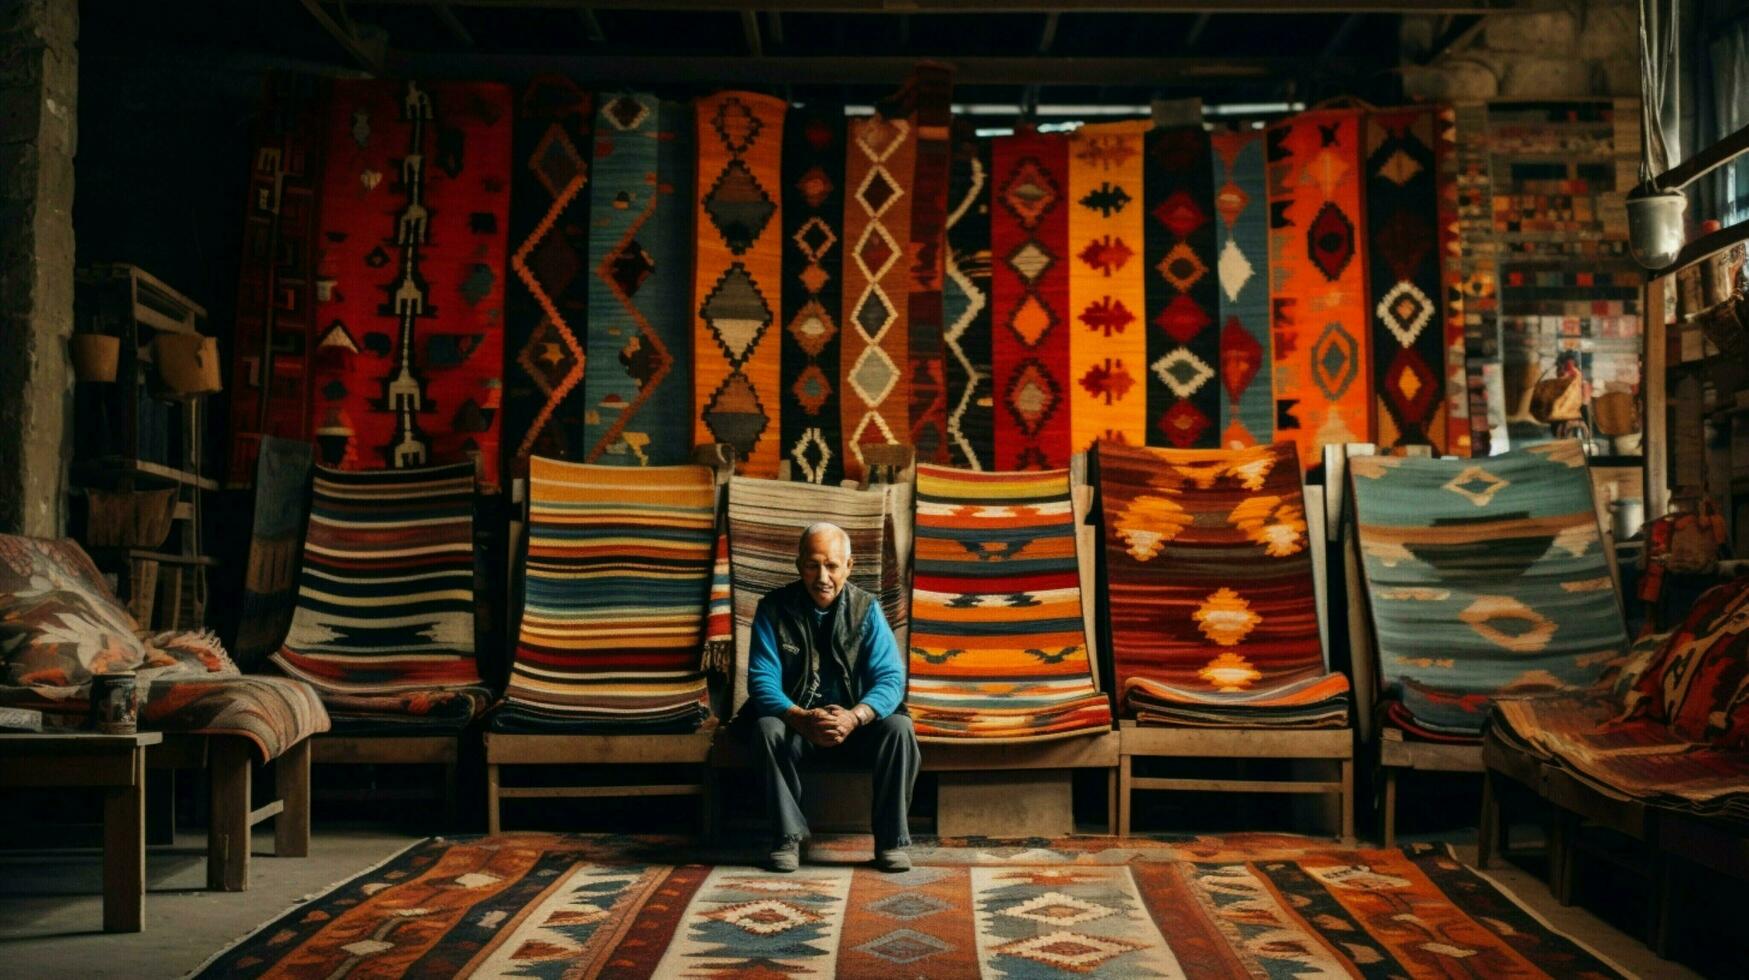 geweven kilim tapijt vitrines Turks textiel cultuur foto